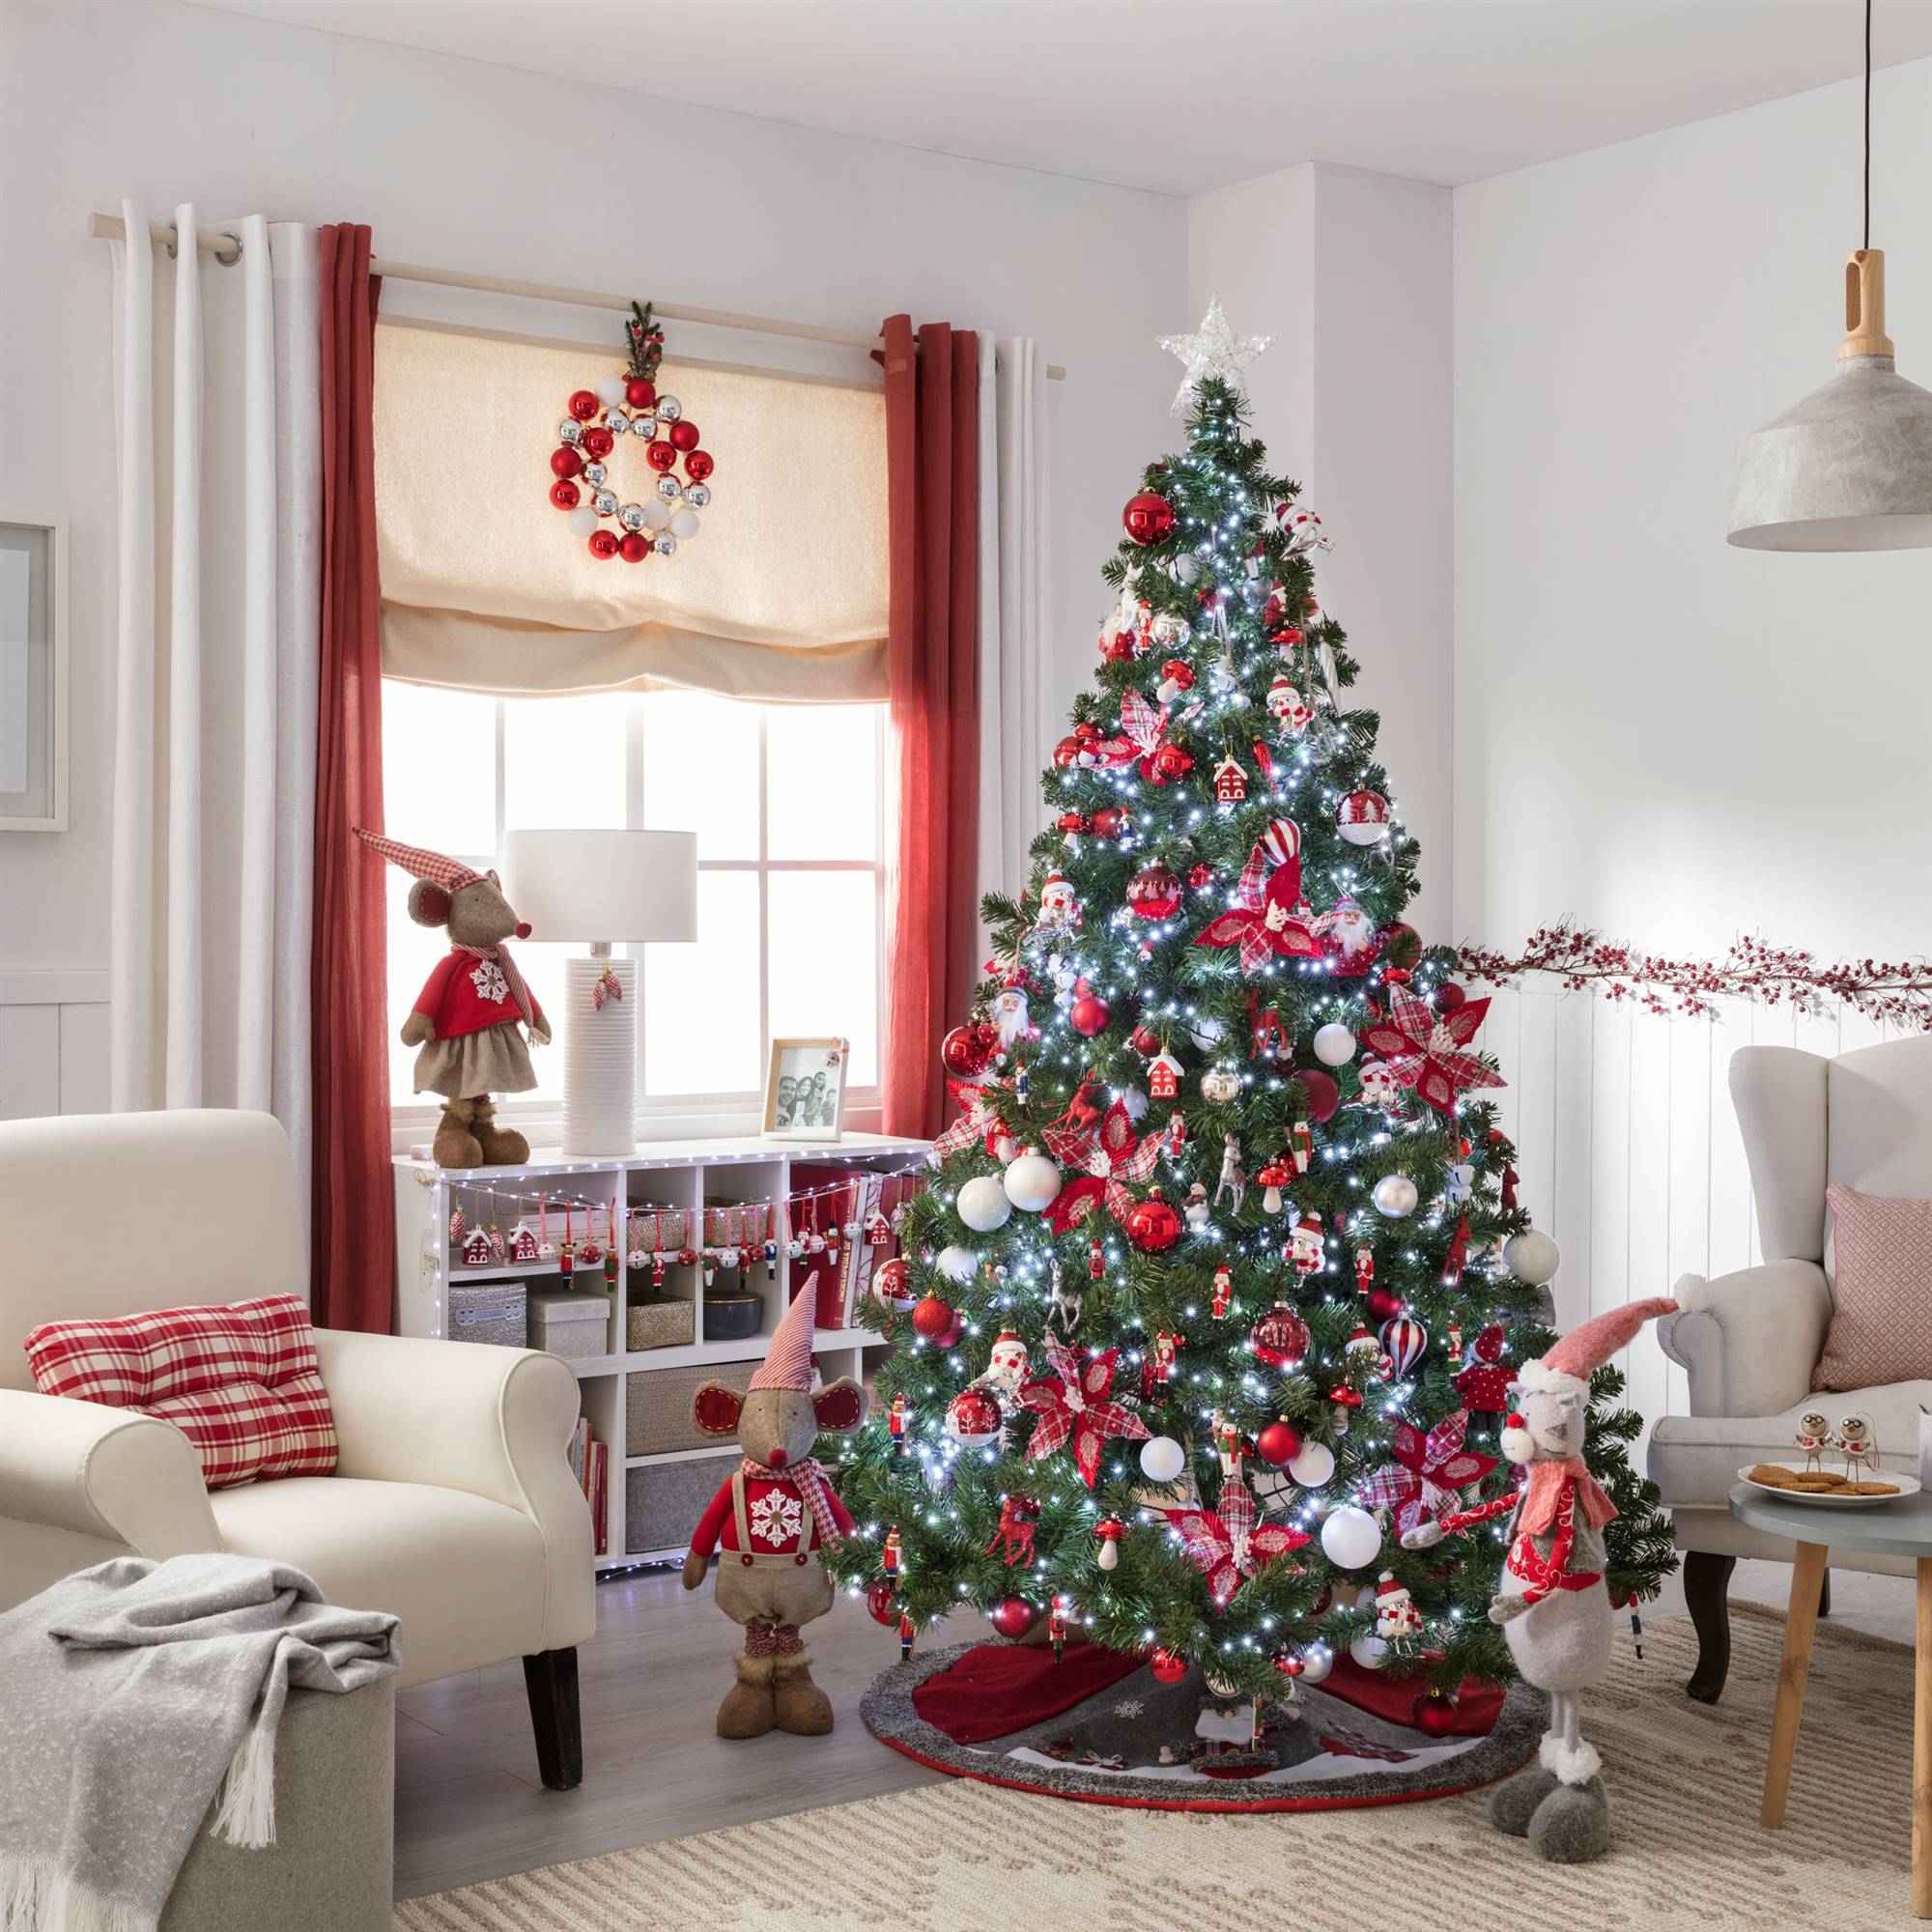 blanco-y-rojo-navidad-2019-fotos-validadas-07. blanco-y-rojo-navidad-2019-leroy merlin